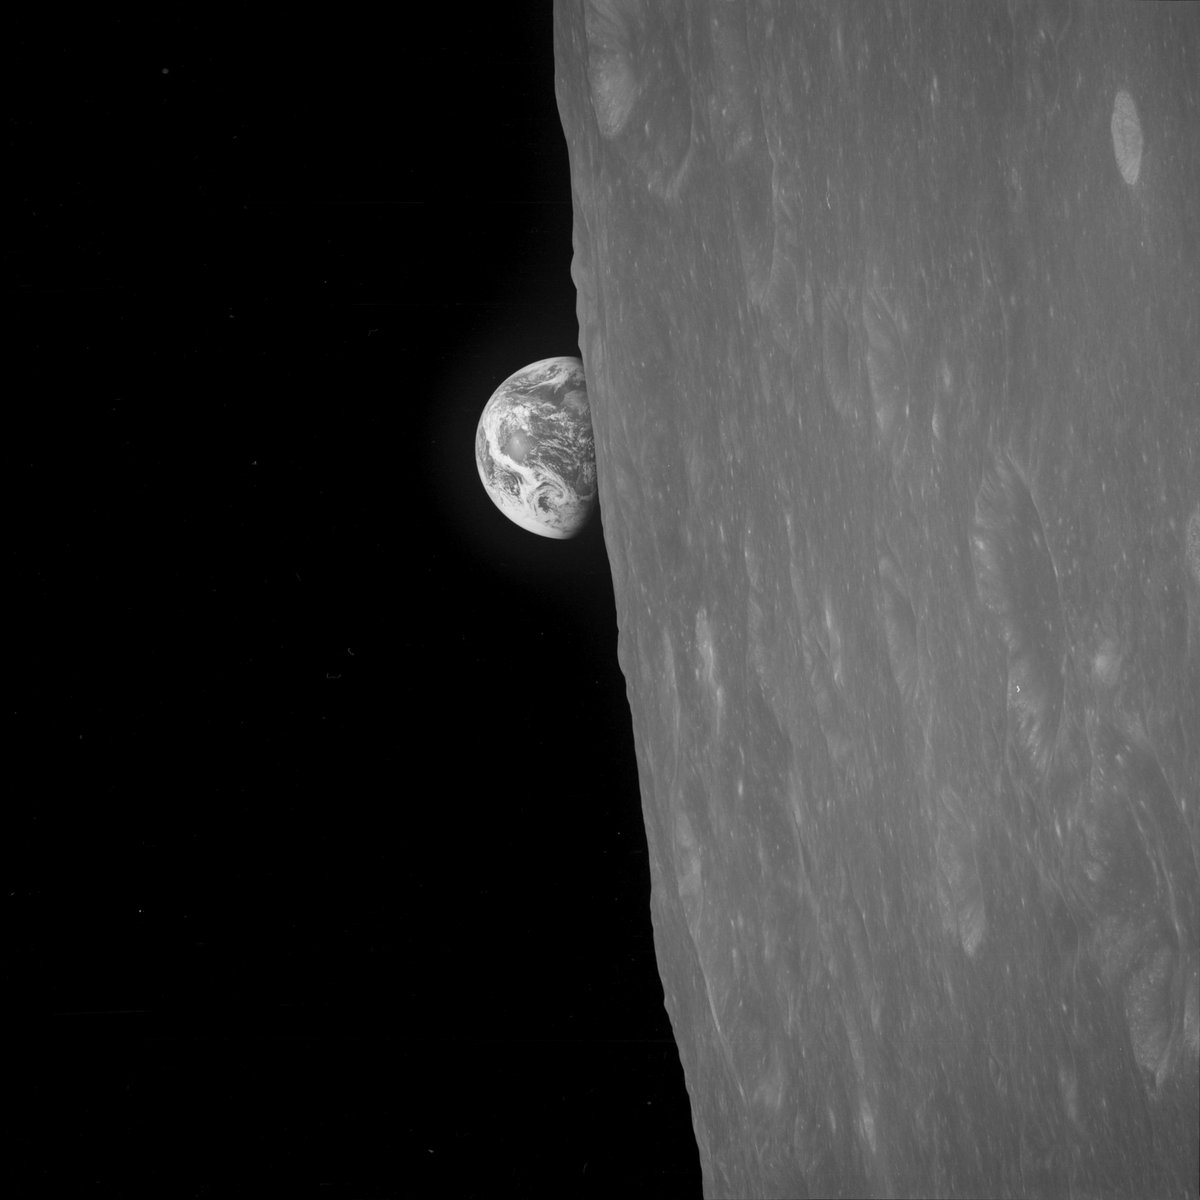 Trop tard Frank, c'est dans la boîte ! Voici la première image en noir et blanc © NASA / B. Anders